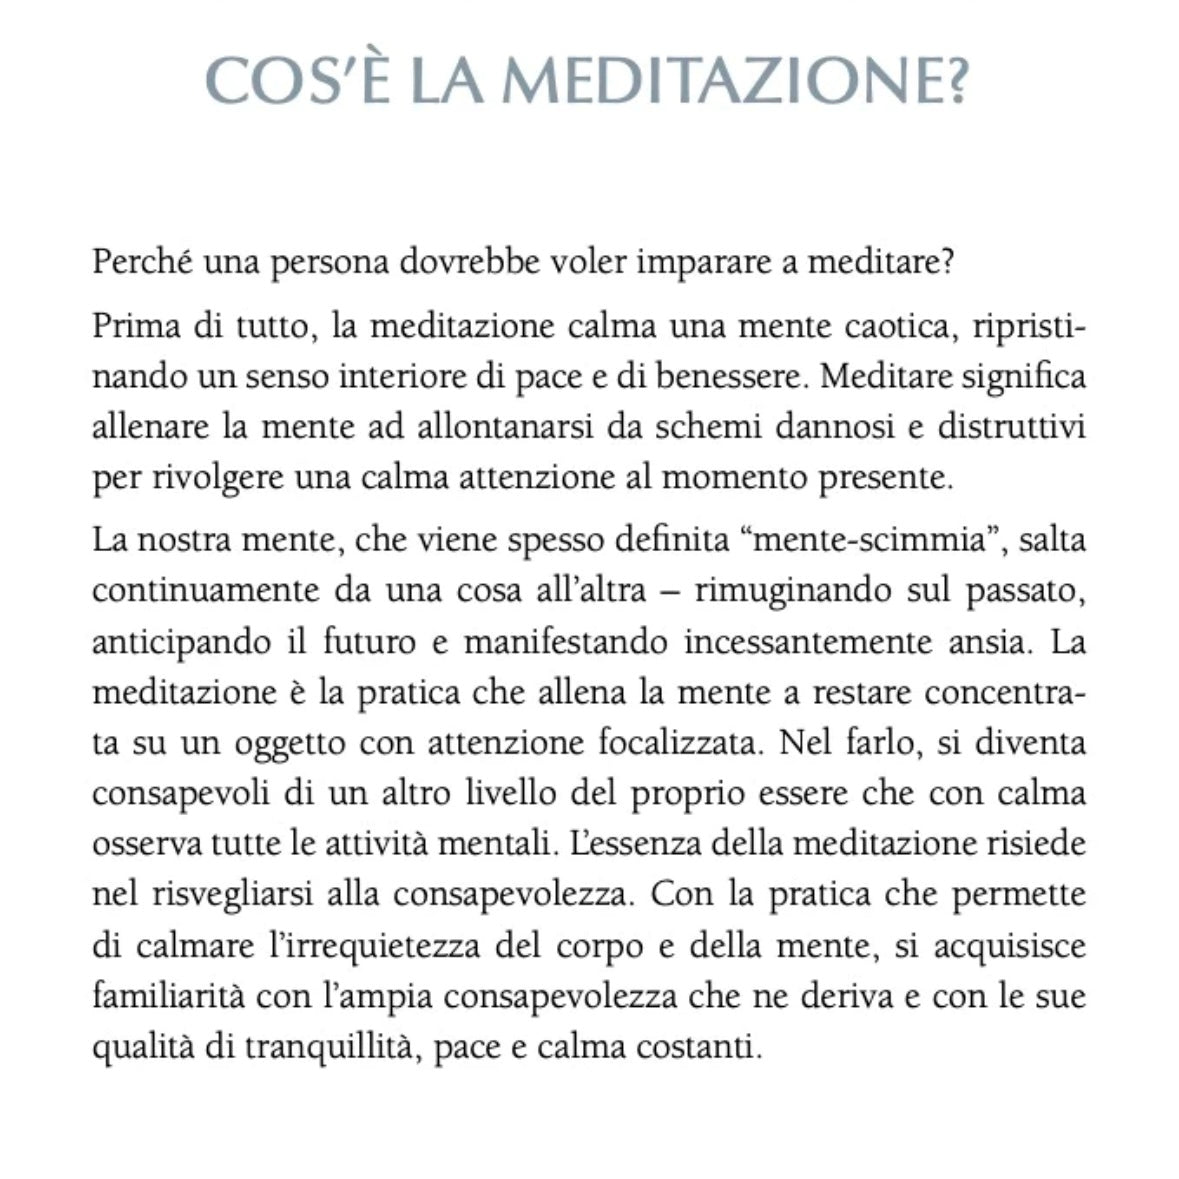 Libro &quot;Il Piccolo Libro della Meditazione&quot; David Pond - Tecniche meditative